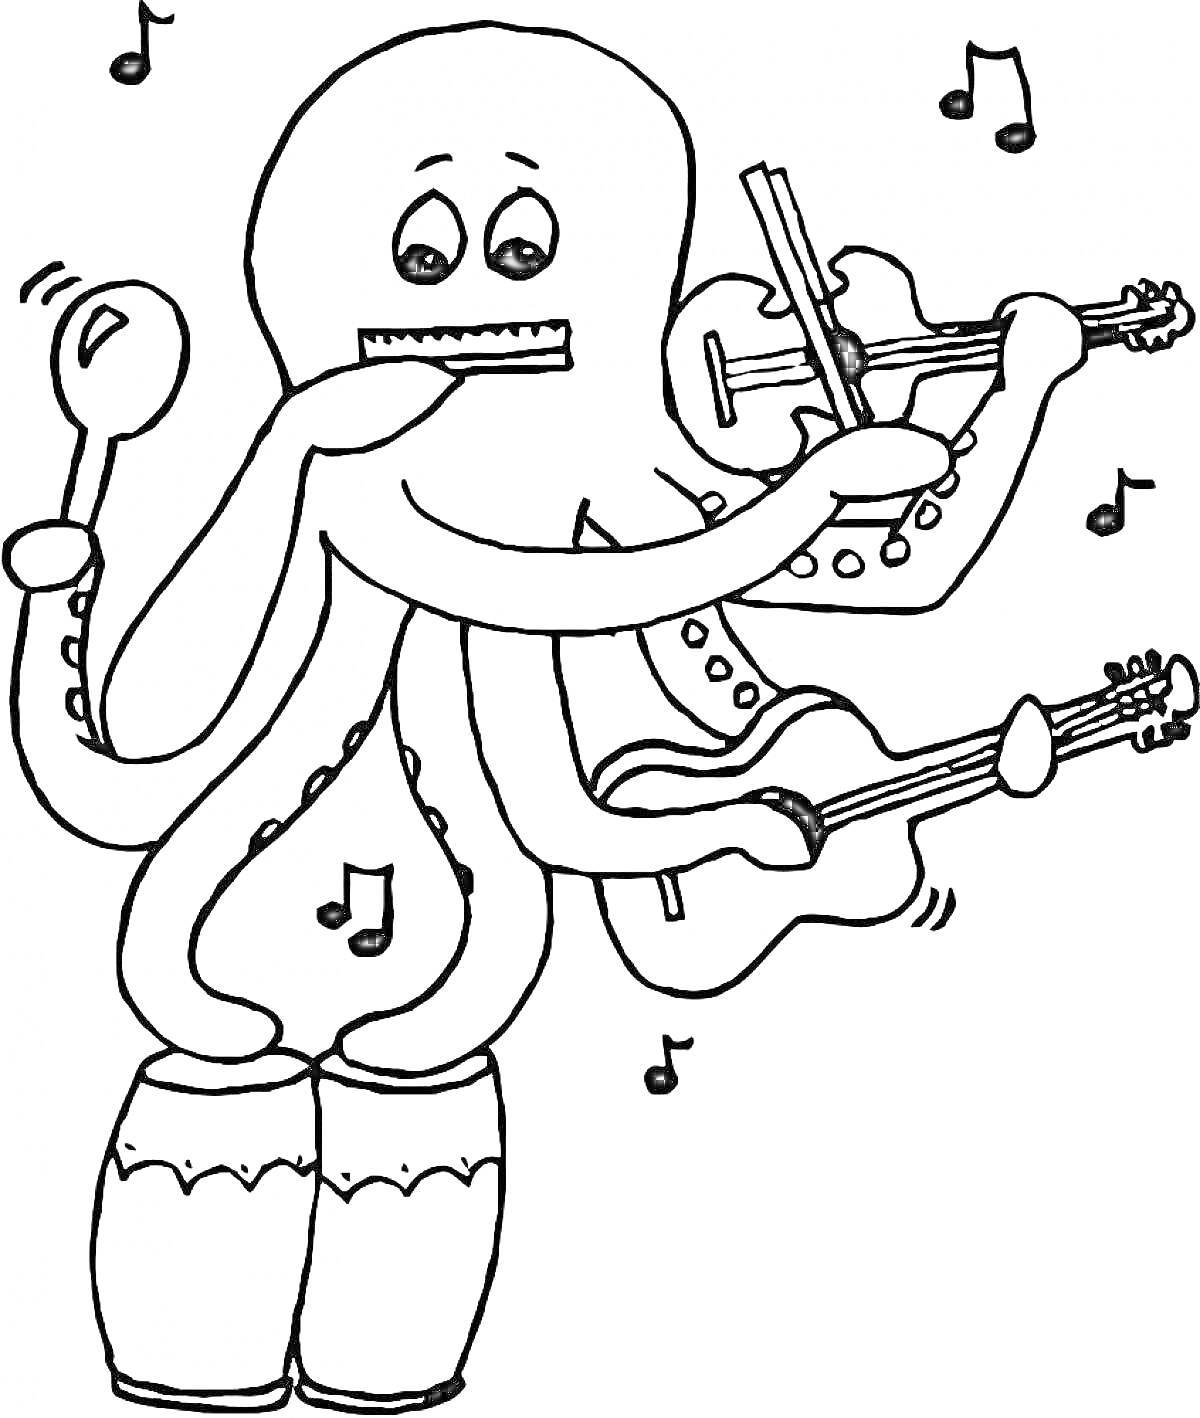 Раскраска Осминог, играющий на музыкальных инструментах (губная гармоника, скрипка, ложки, гитара) с нотами